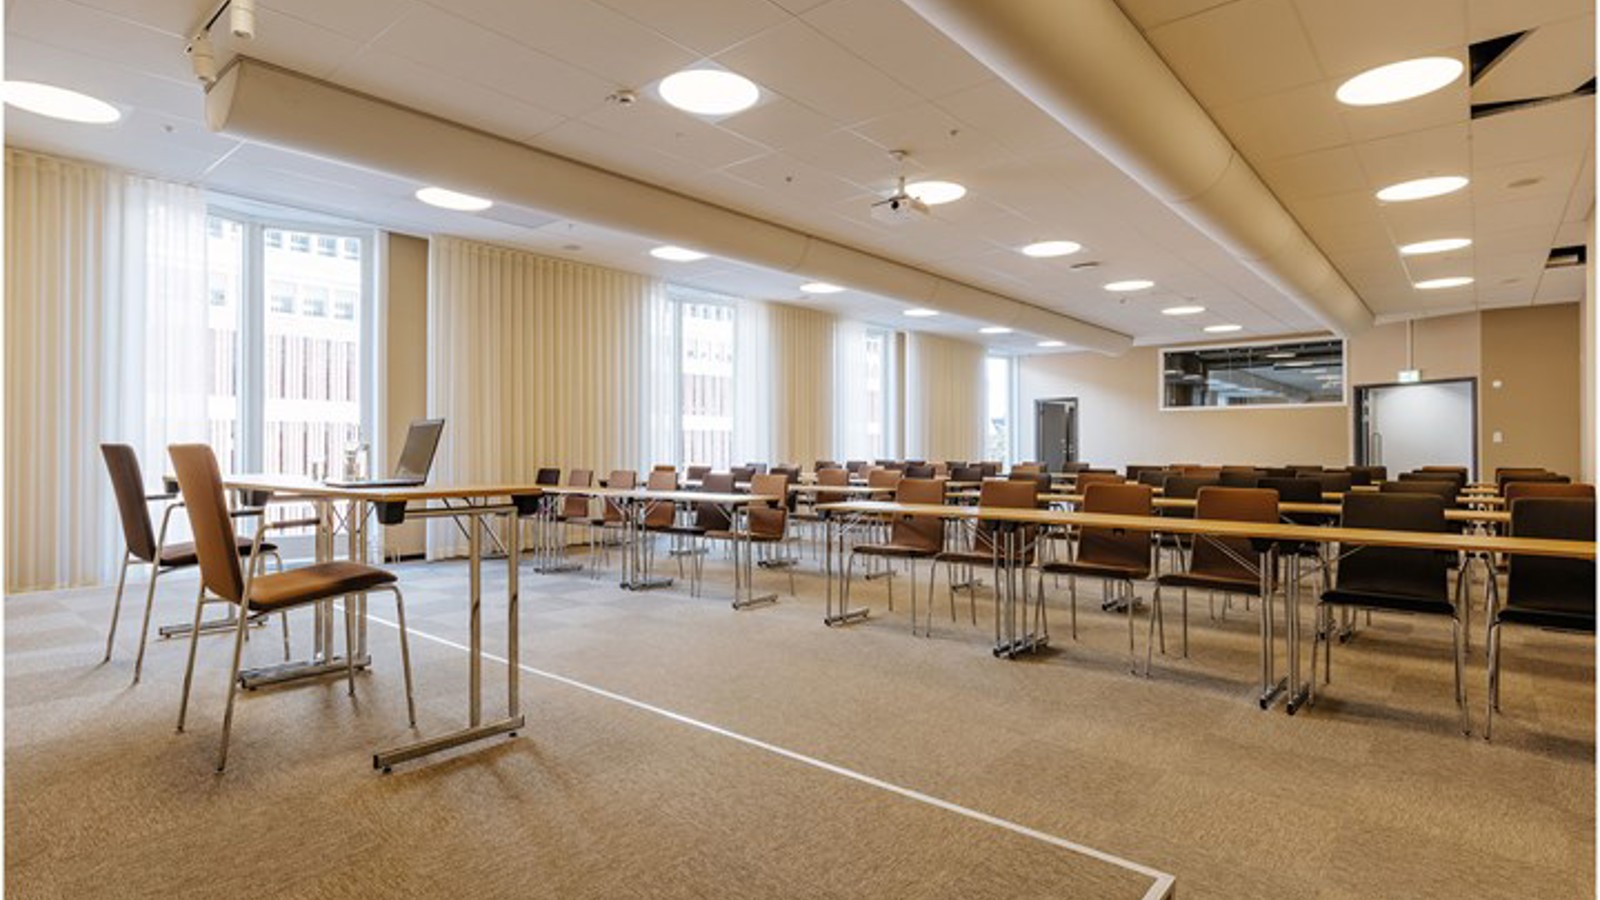 Konferenslokal i skolsittning, med scen och stora fönster